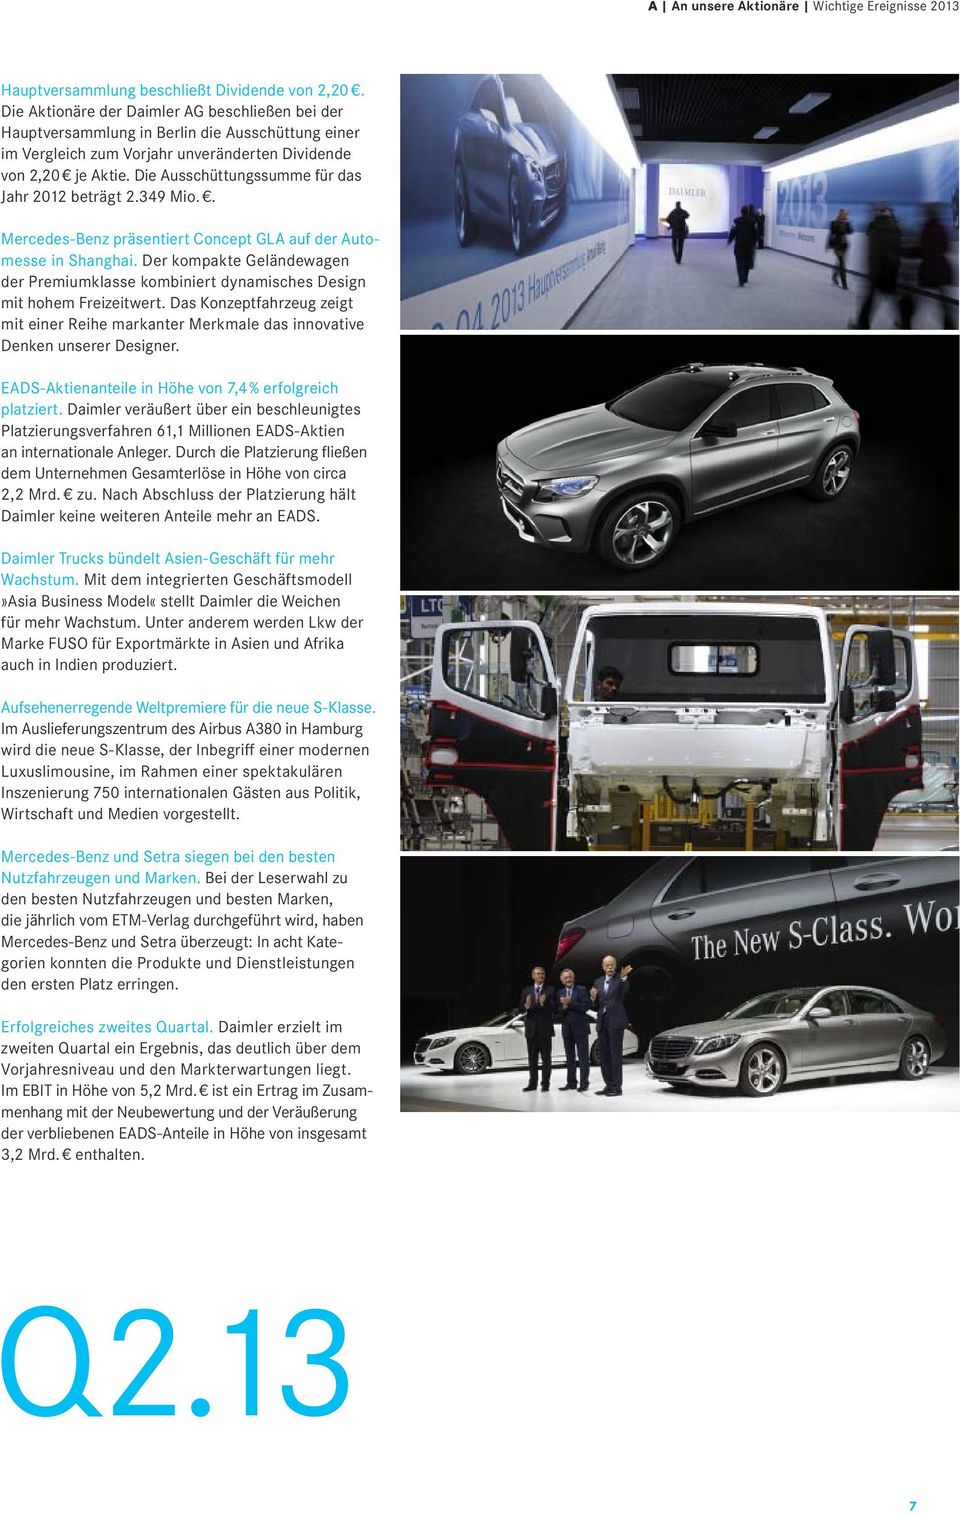 Die Ausschüttungssumme für das Jahr 2012 beträgt 2.349 Mio.. Mercedes-Benz präsentiert Concept GLA auf der Automesse in Shanghai.